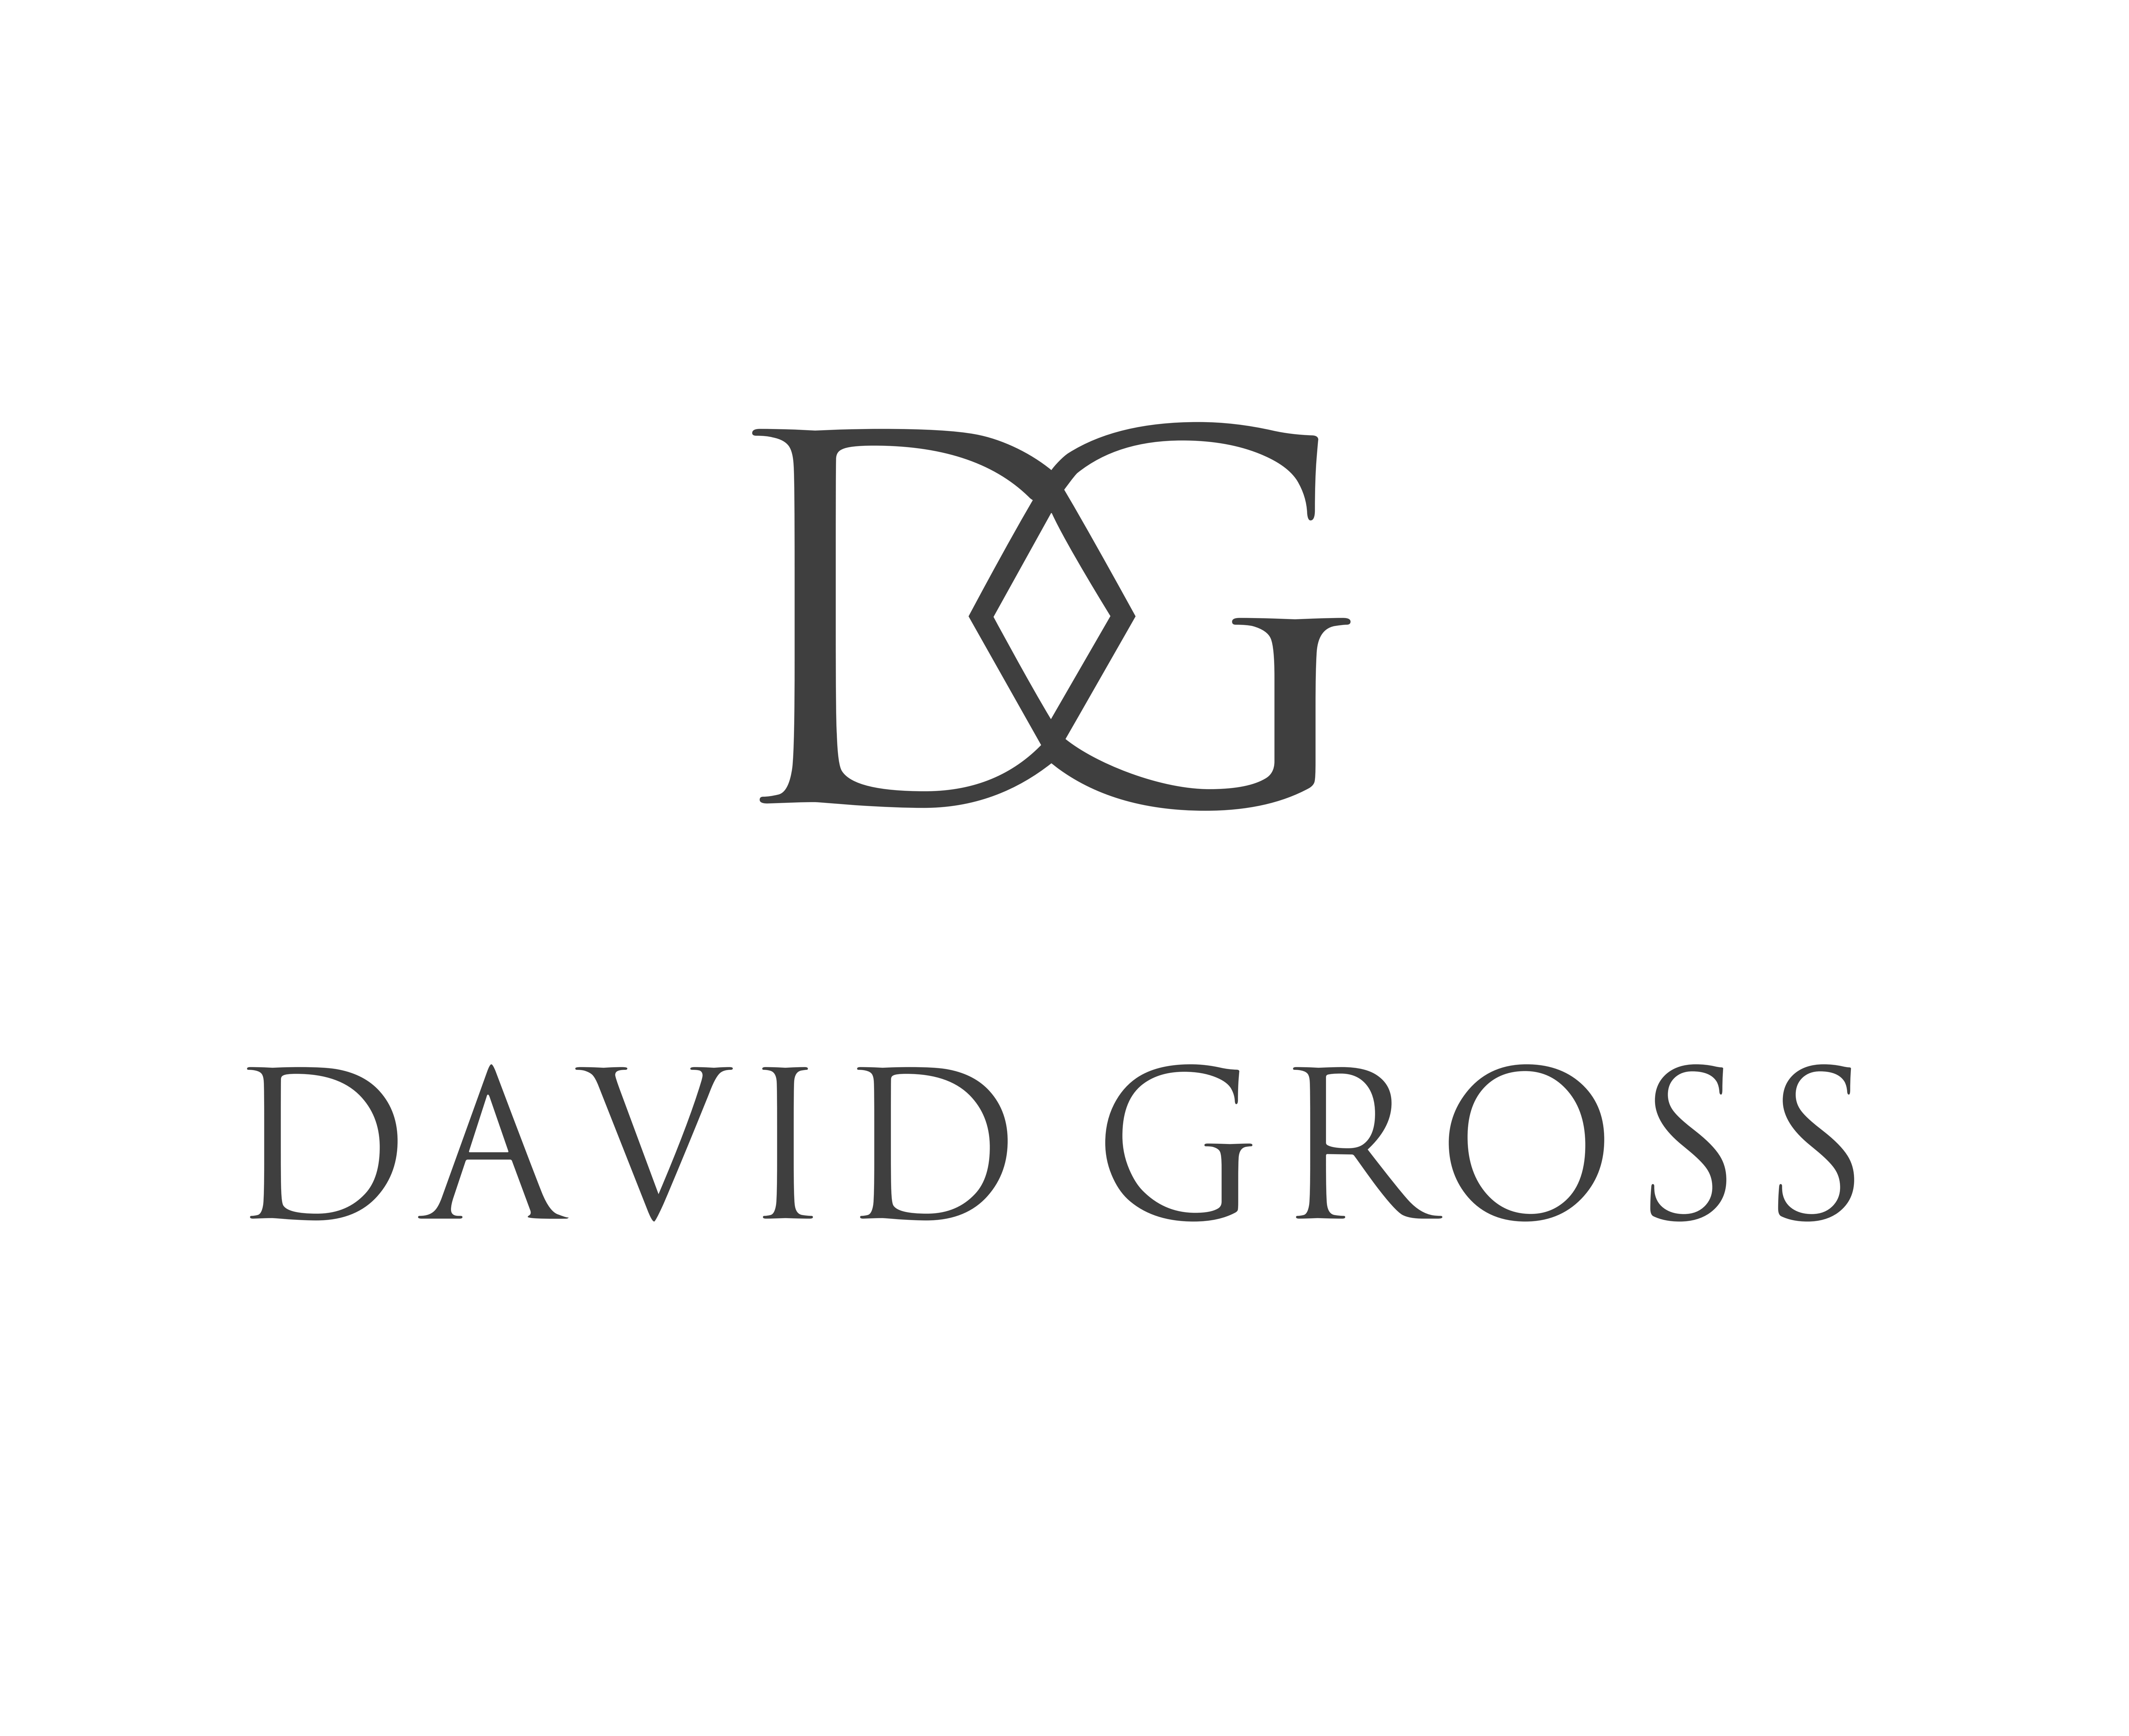 David Gross